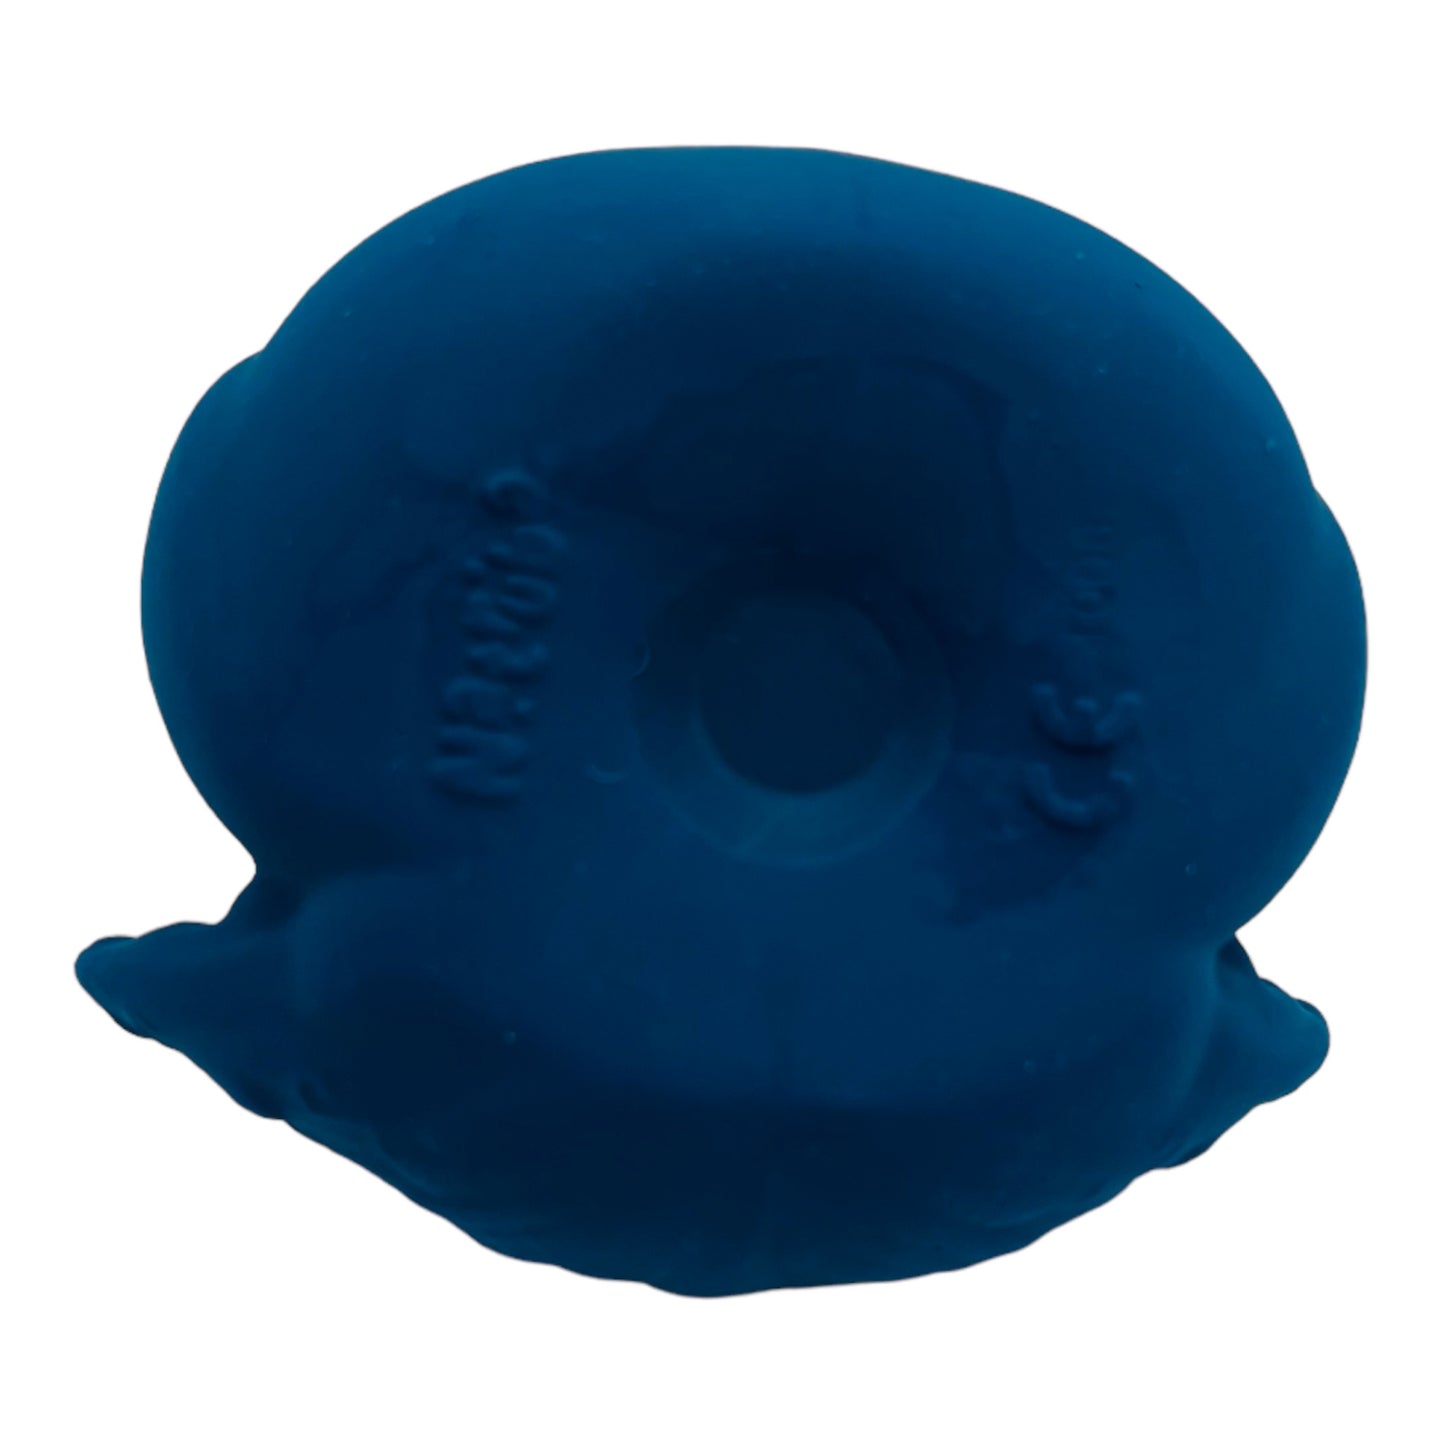 Bath Toy Peacock Blue-Natural Non Toxic Rubber-No Holes